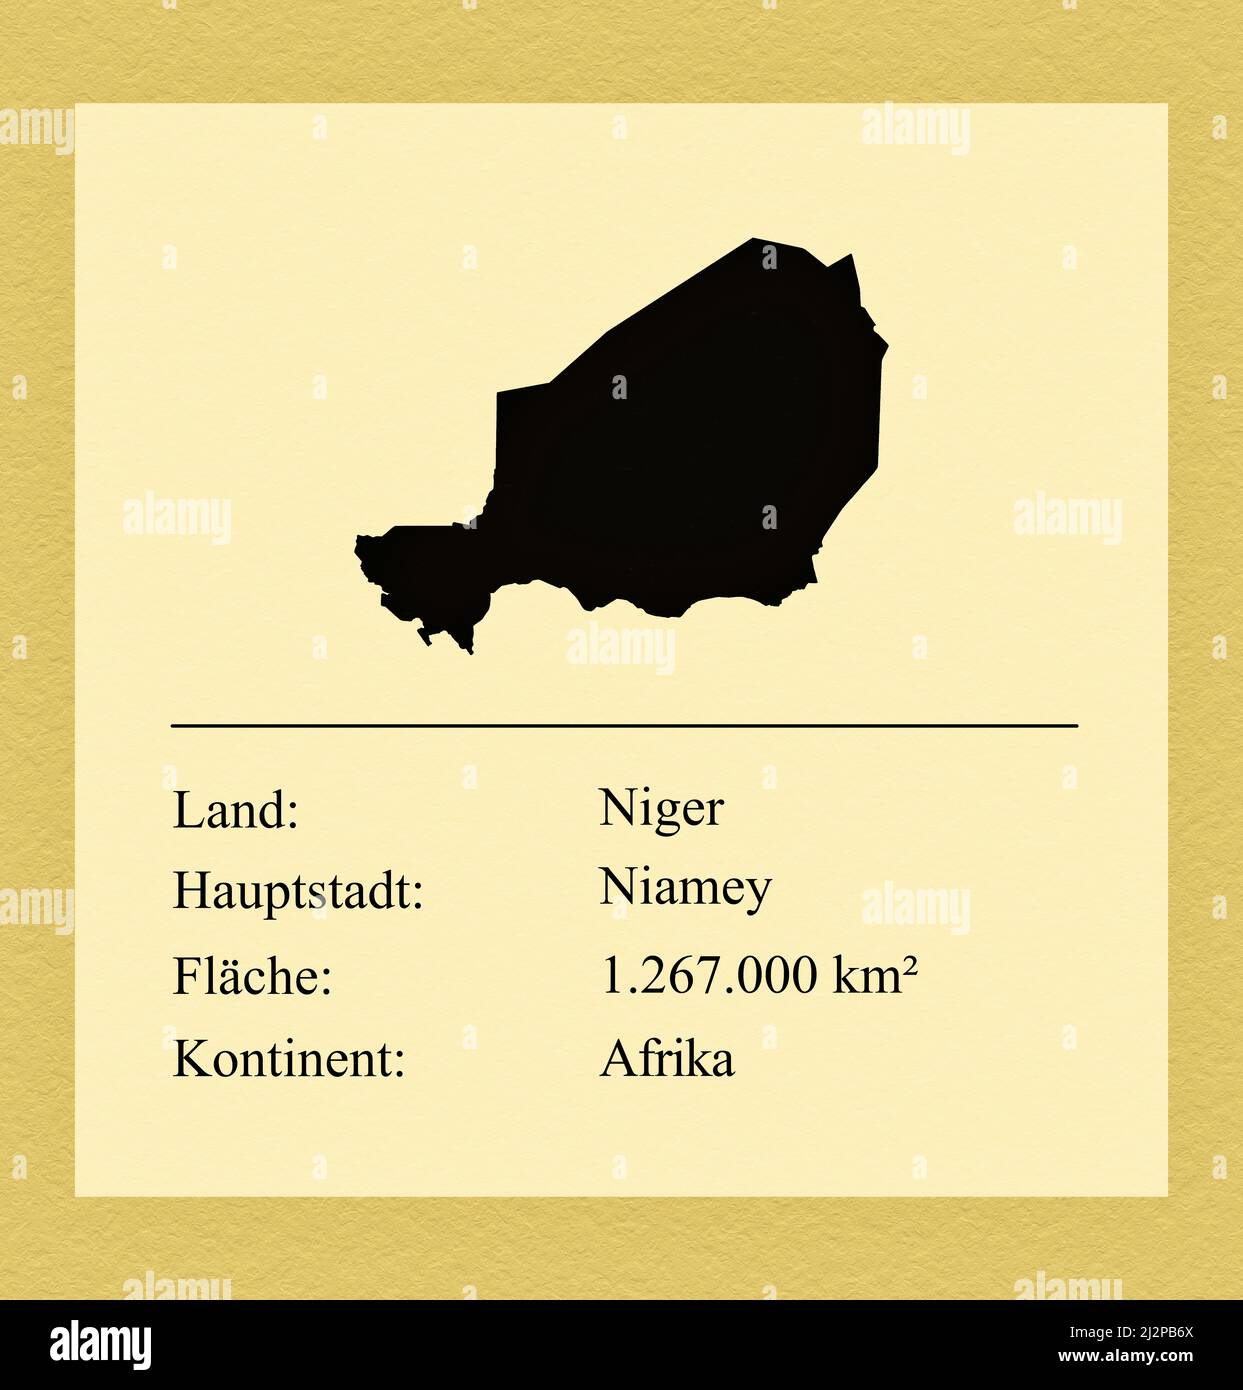 Umrisse des Landes Niger, darunter ein kleiner Steckbrief mit Ländernamen, Hauptstadt, Fläche und Kontinent Foto de stock